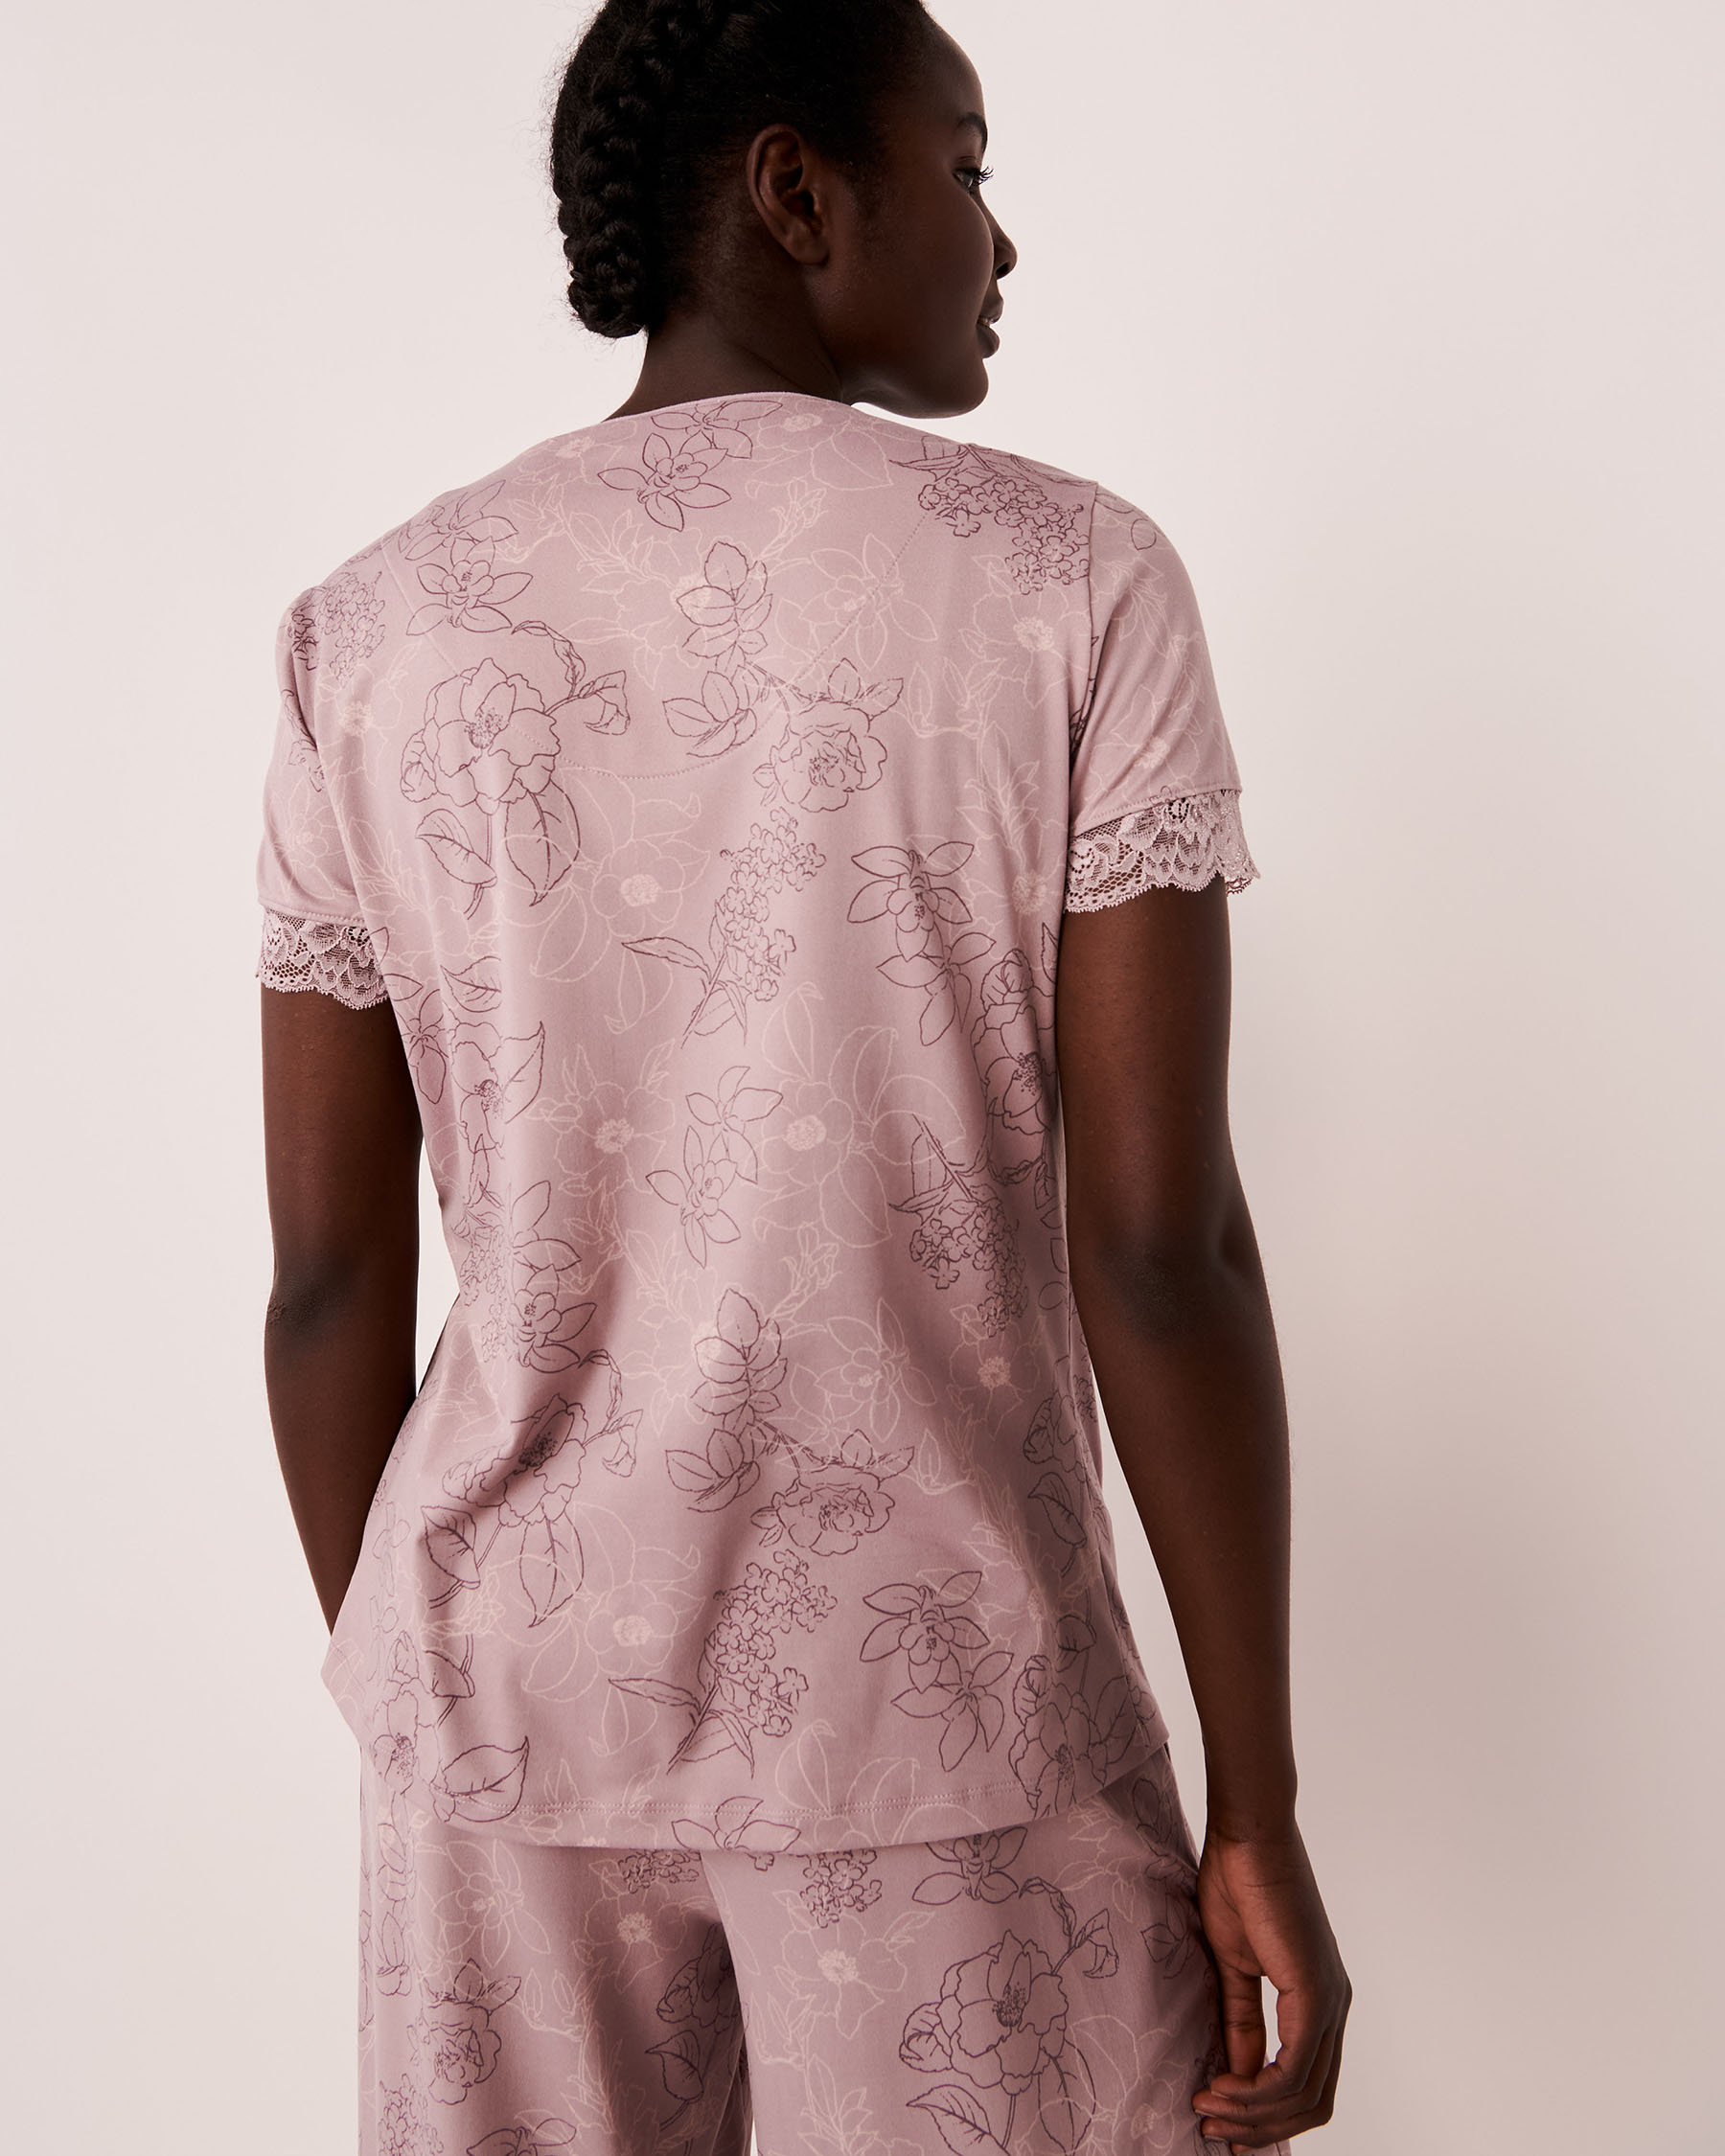 LA VIE EN ROSE Super Soft Lace Trim Buttoned T-shirt Floral outline 40100340 - View2